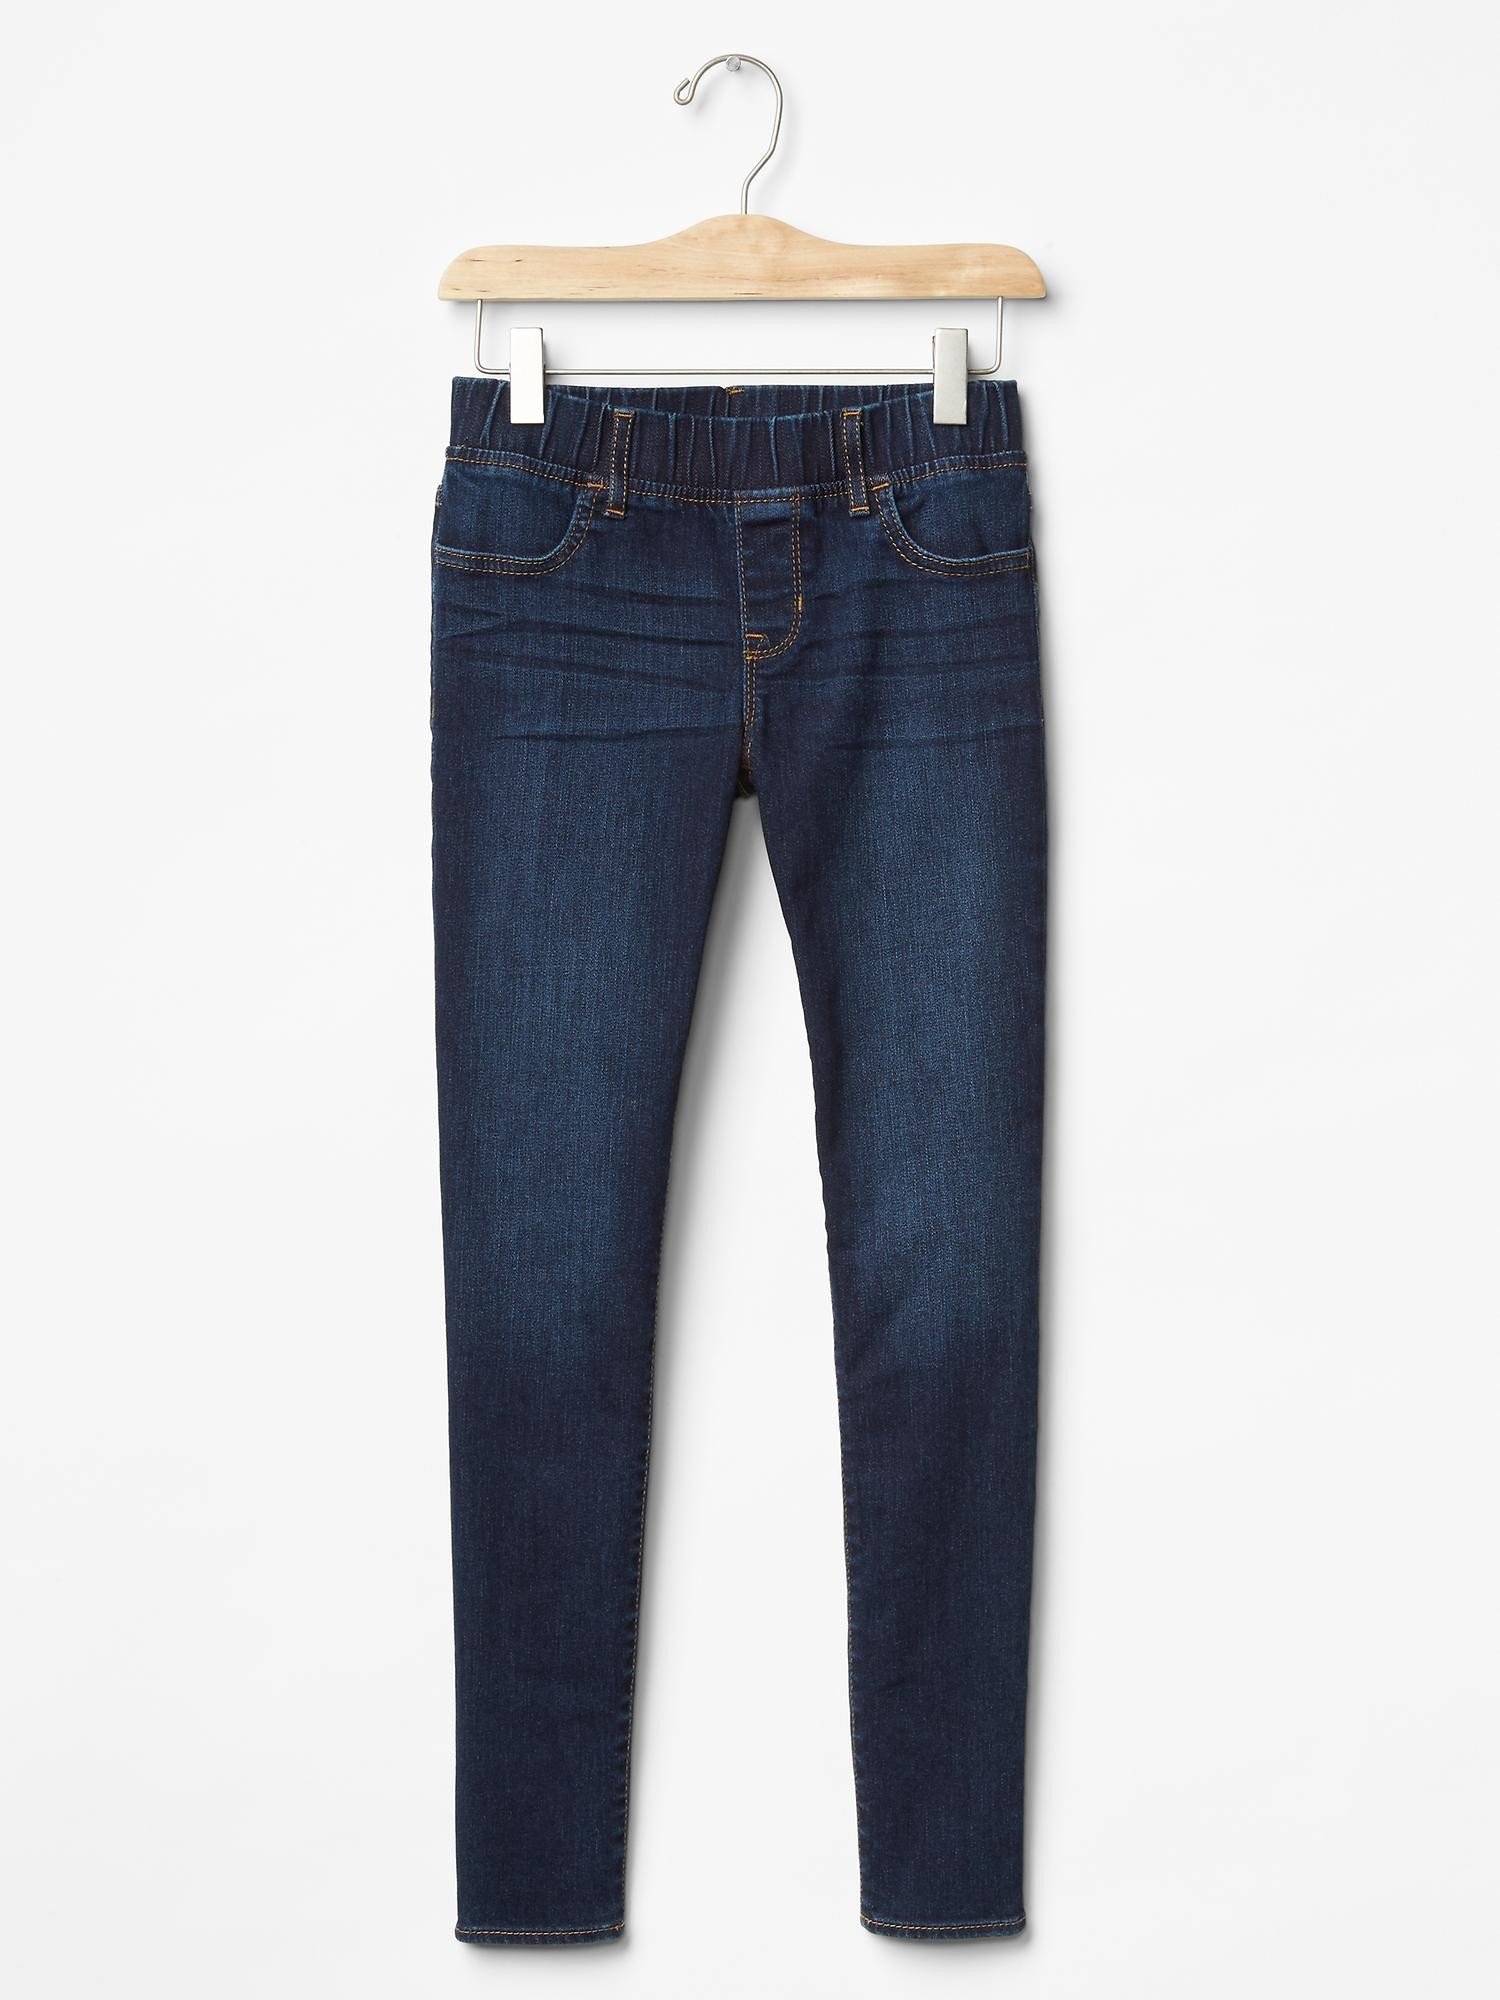 1969 streç legging jean pantolon product image